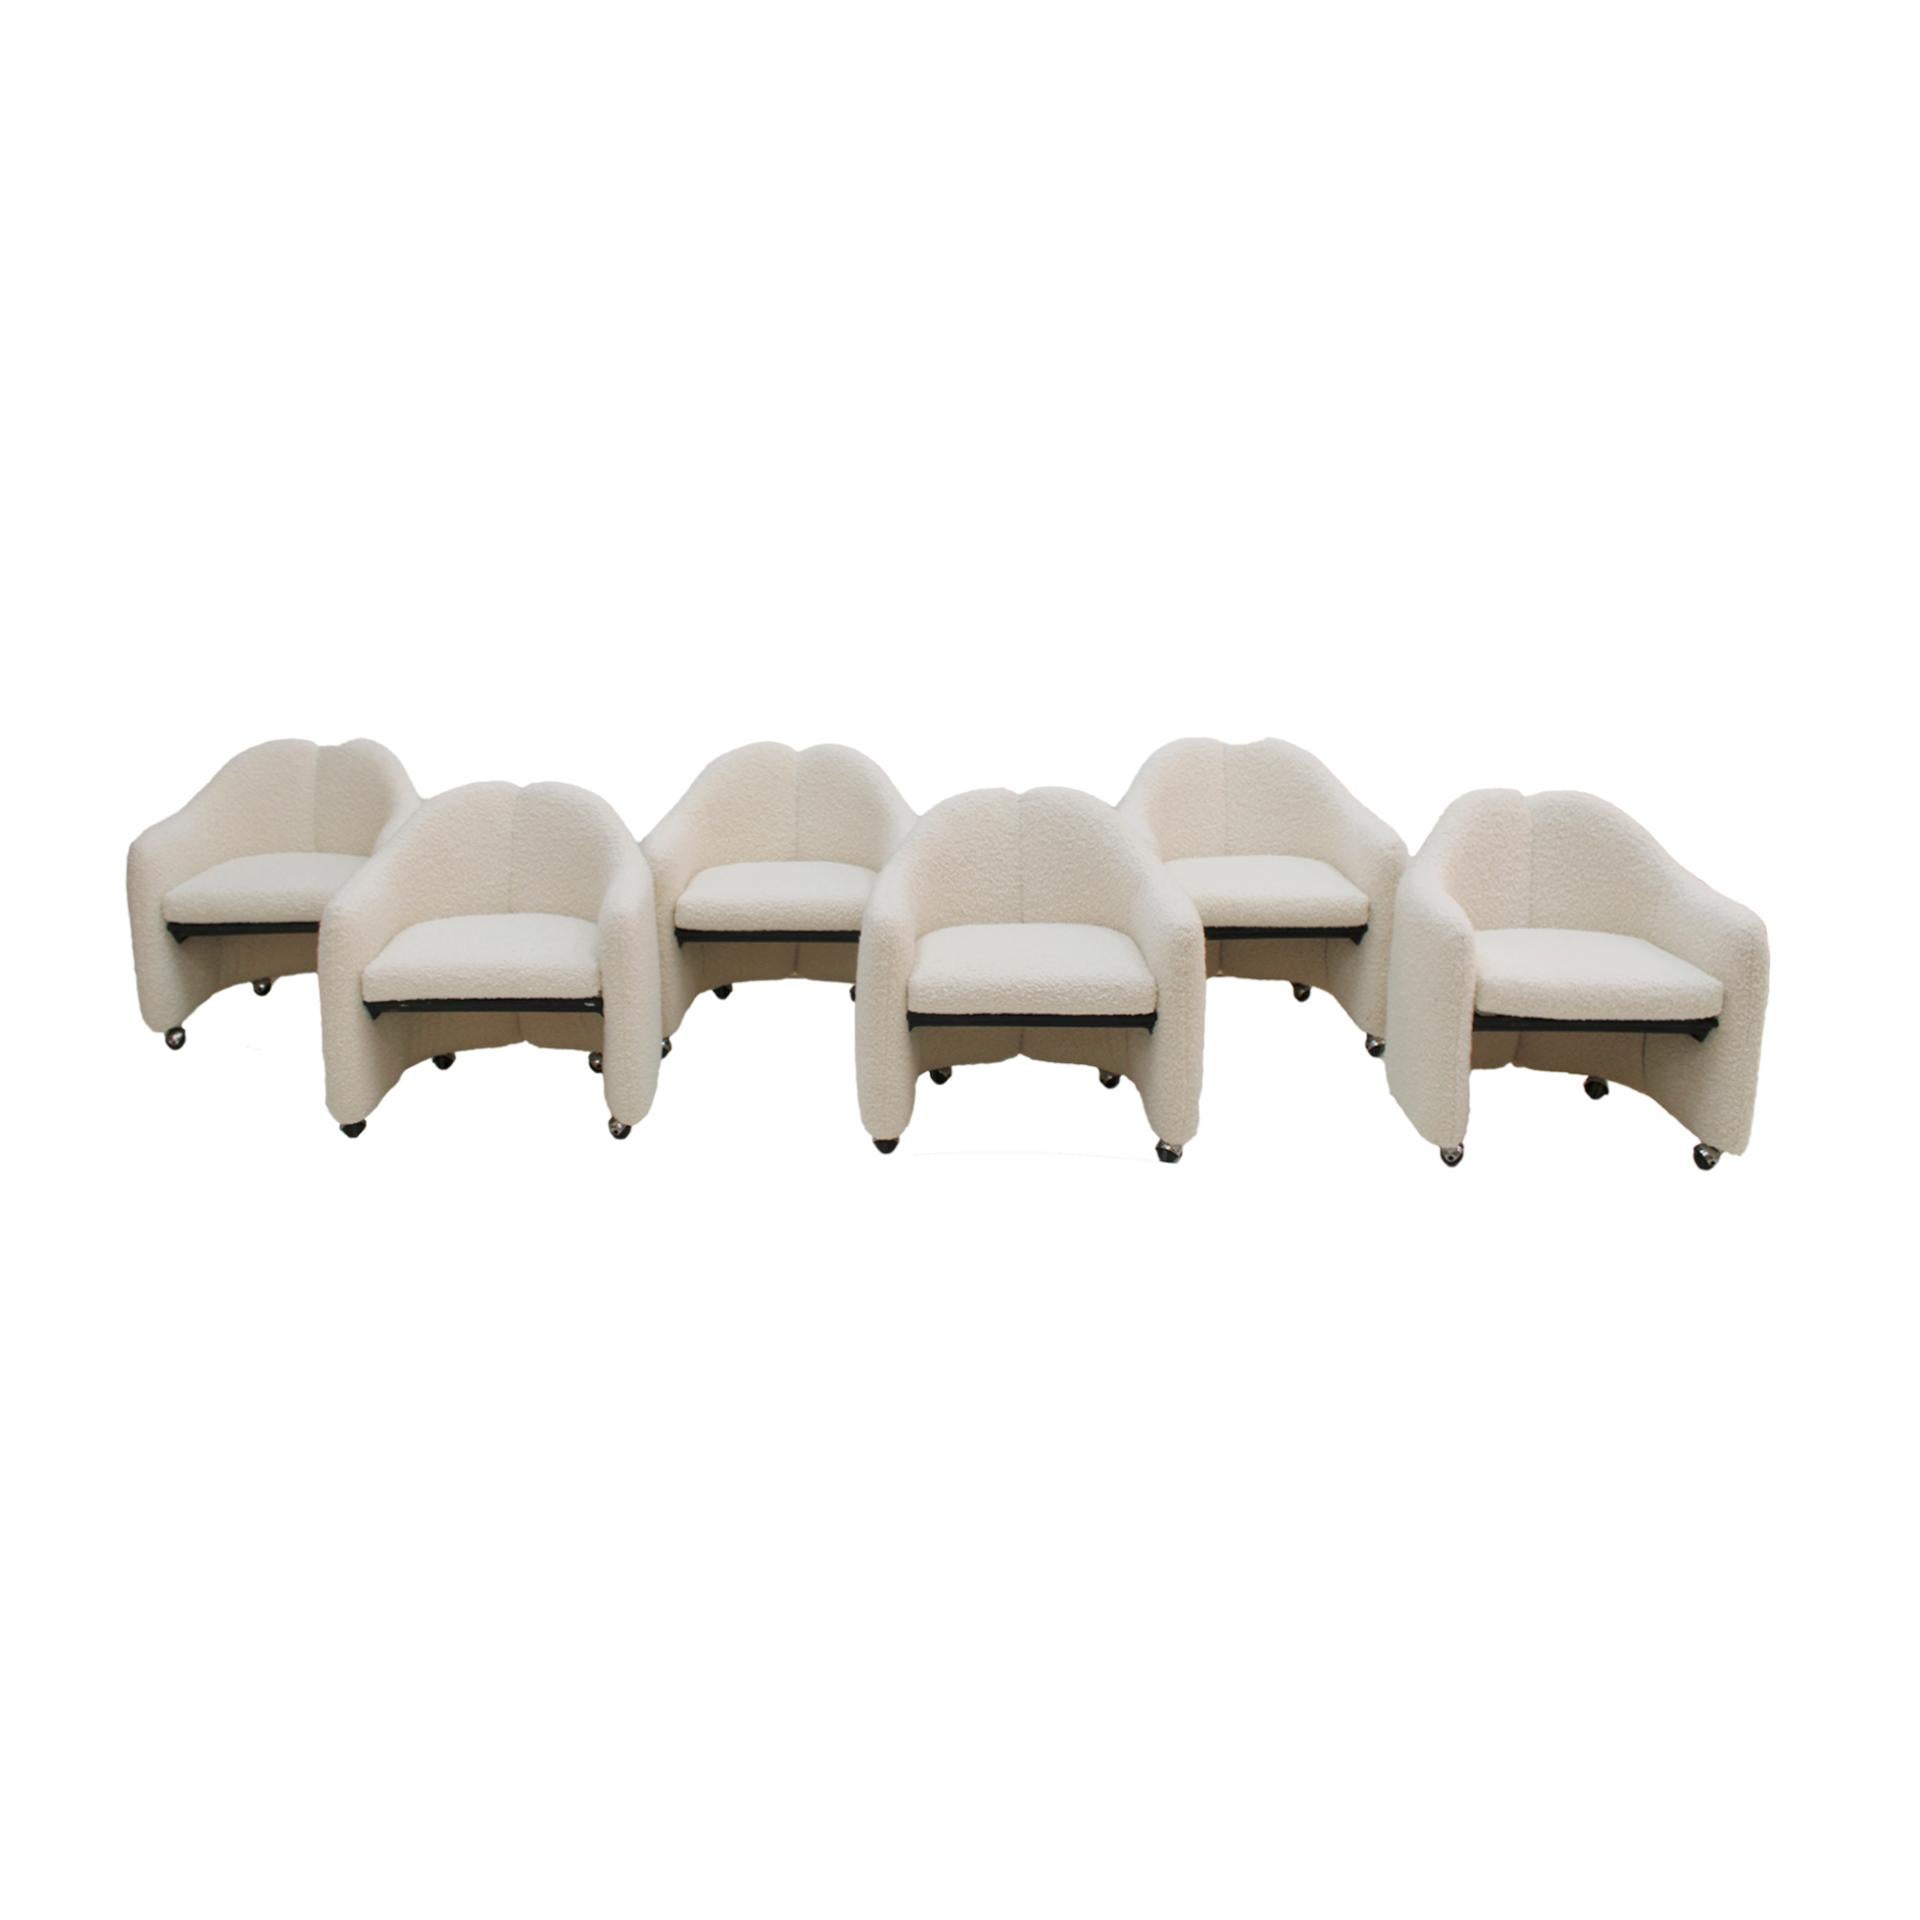 Ensemble de six chaises PS 142 conçues par Eugenio Gerli et produites par Tecno. Structure en métal massif et rembourrage en laine bouclée blanche. Italie années 1960. Label Tecno Milano.

Notre principal objectif est la satisfaction du client,